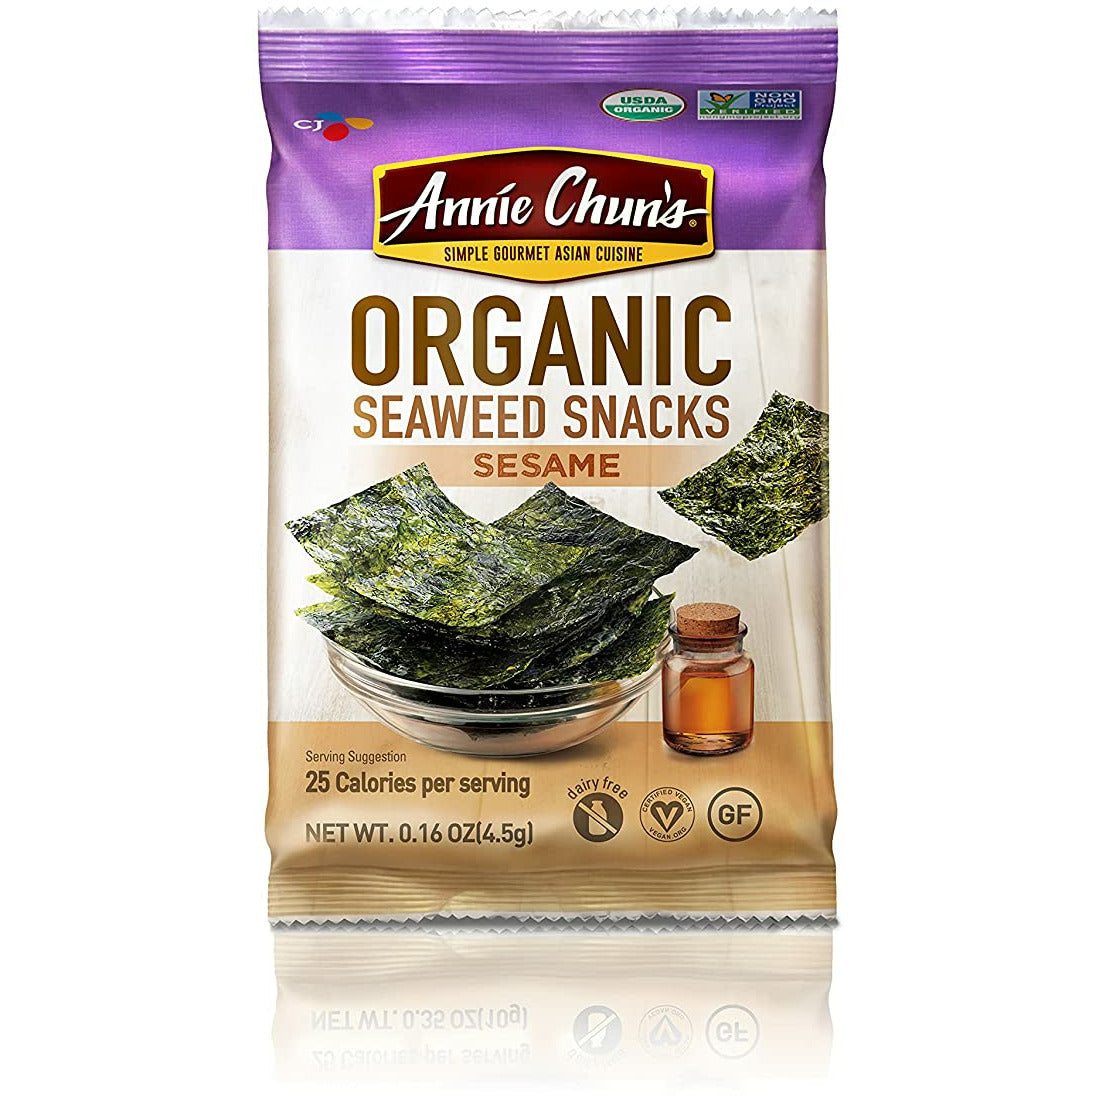 Annie Chun's Organic Seaweed Snacks, Sesame, 0.16 oz (Pack of 12), America's #1 Selling Seaweed Snacks